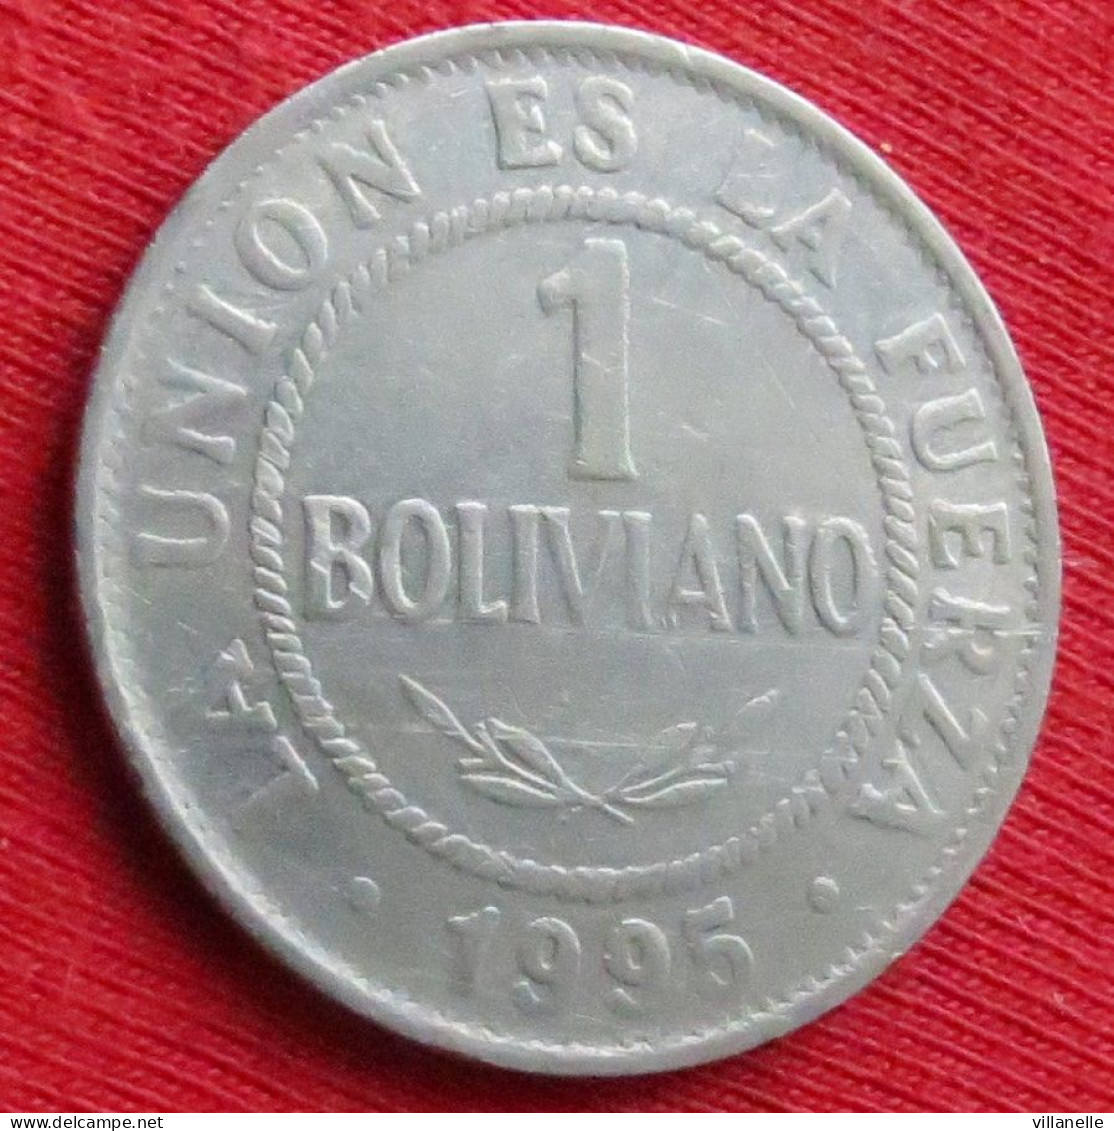 Bolivia 1 Boliviano 1995 Bolivie W ºº - Bolivie